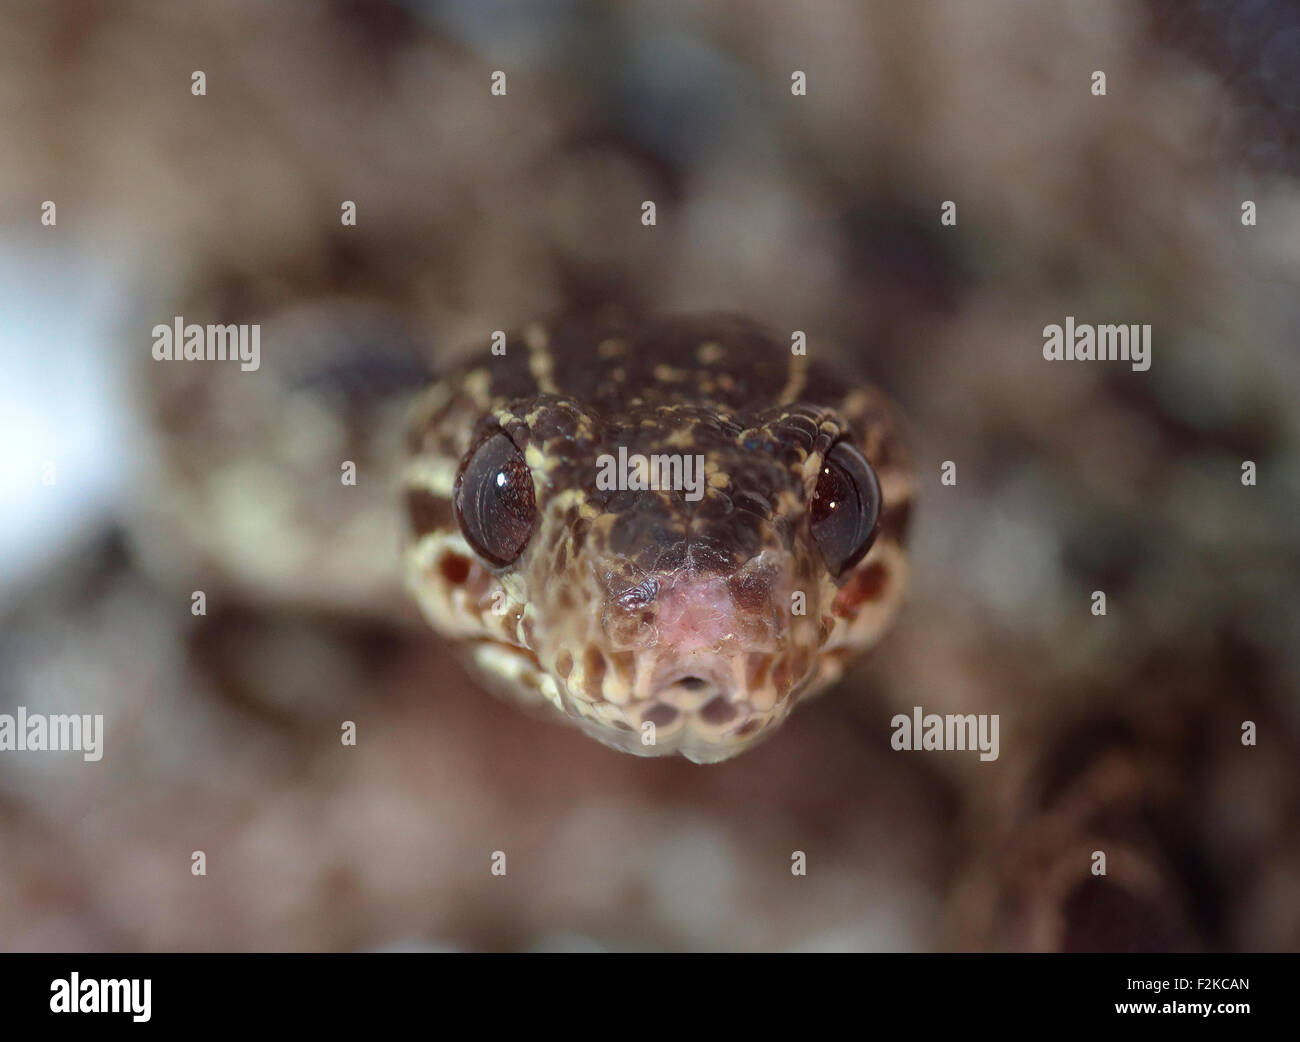 Closeup vista frontal de una serpiente apuntando a la cámara con poca profundidad de campo. Foto de stock